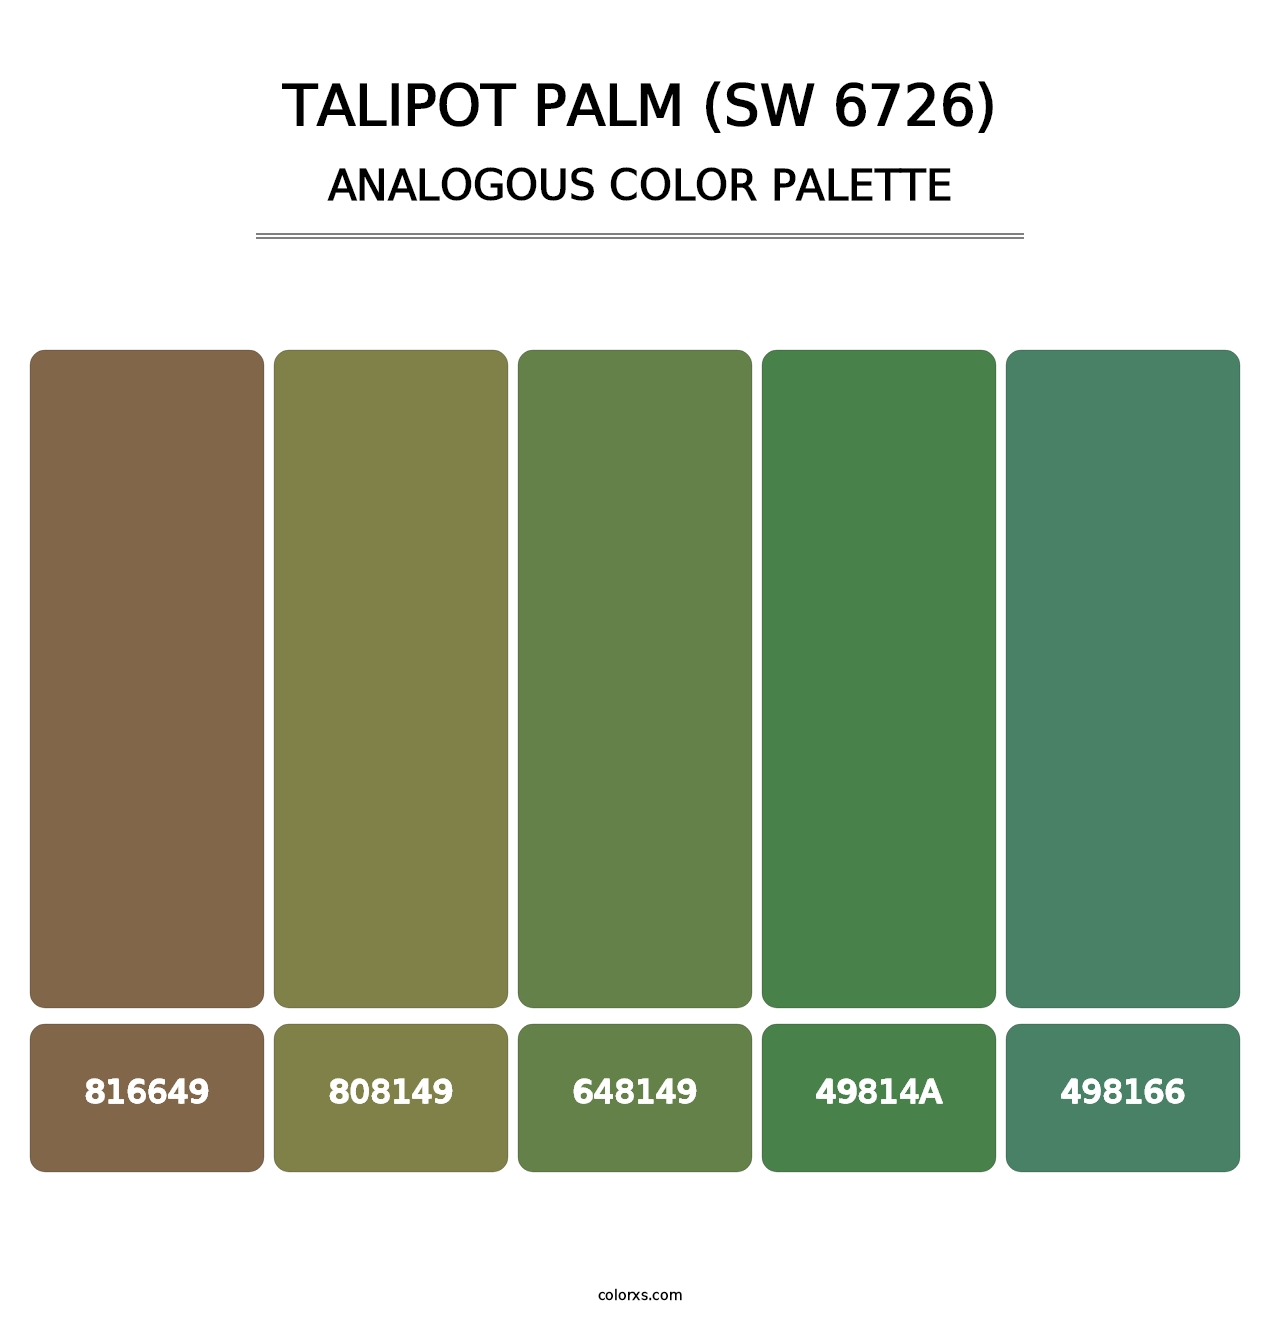 Talipot Palm (SW 6726) - Analogous Color Palette